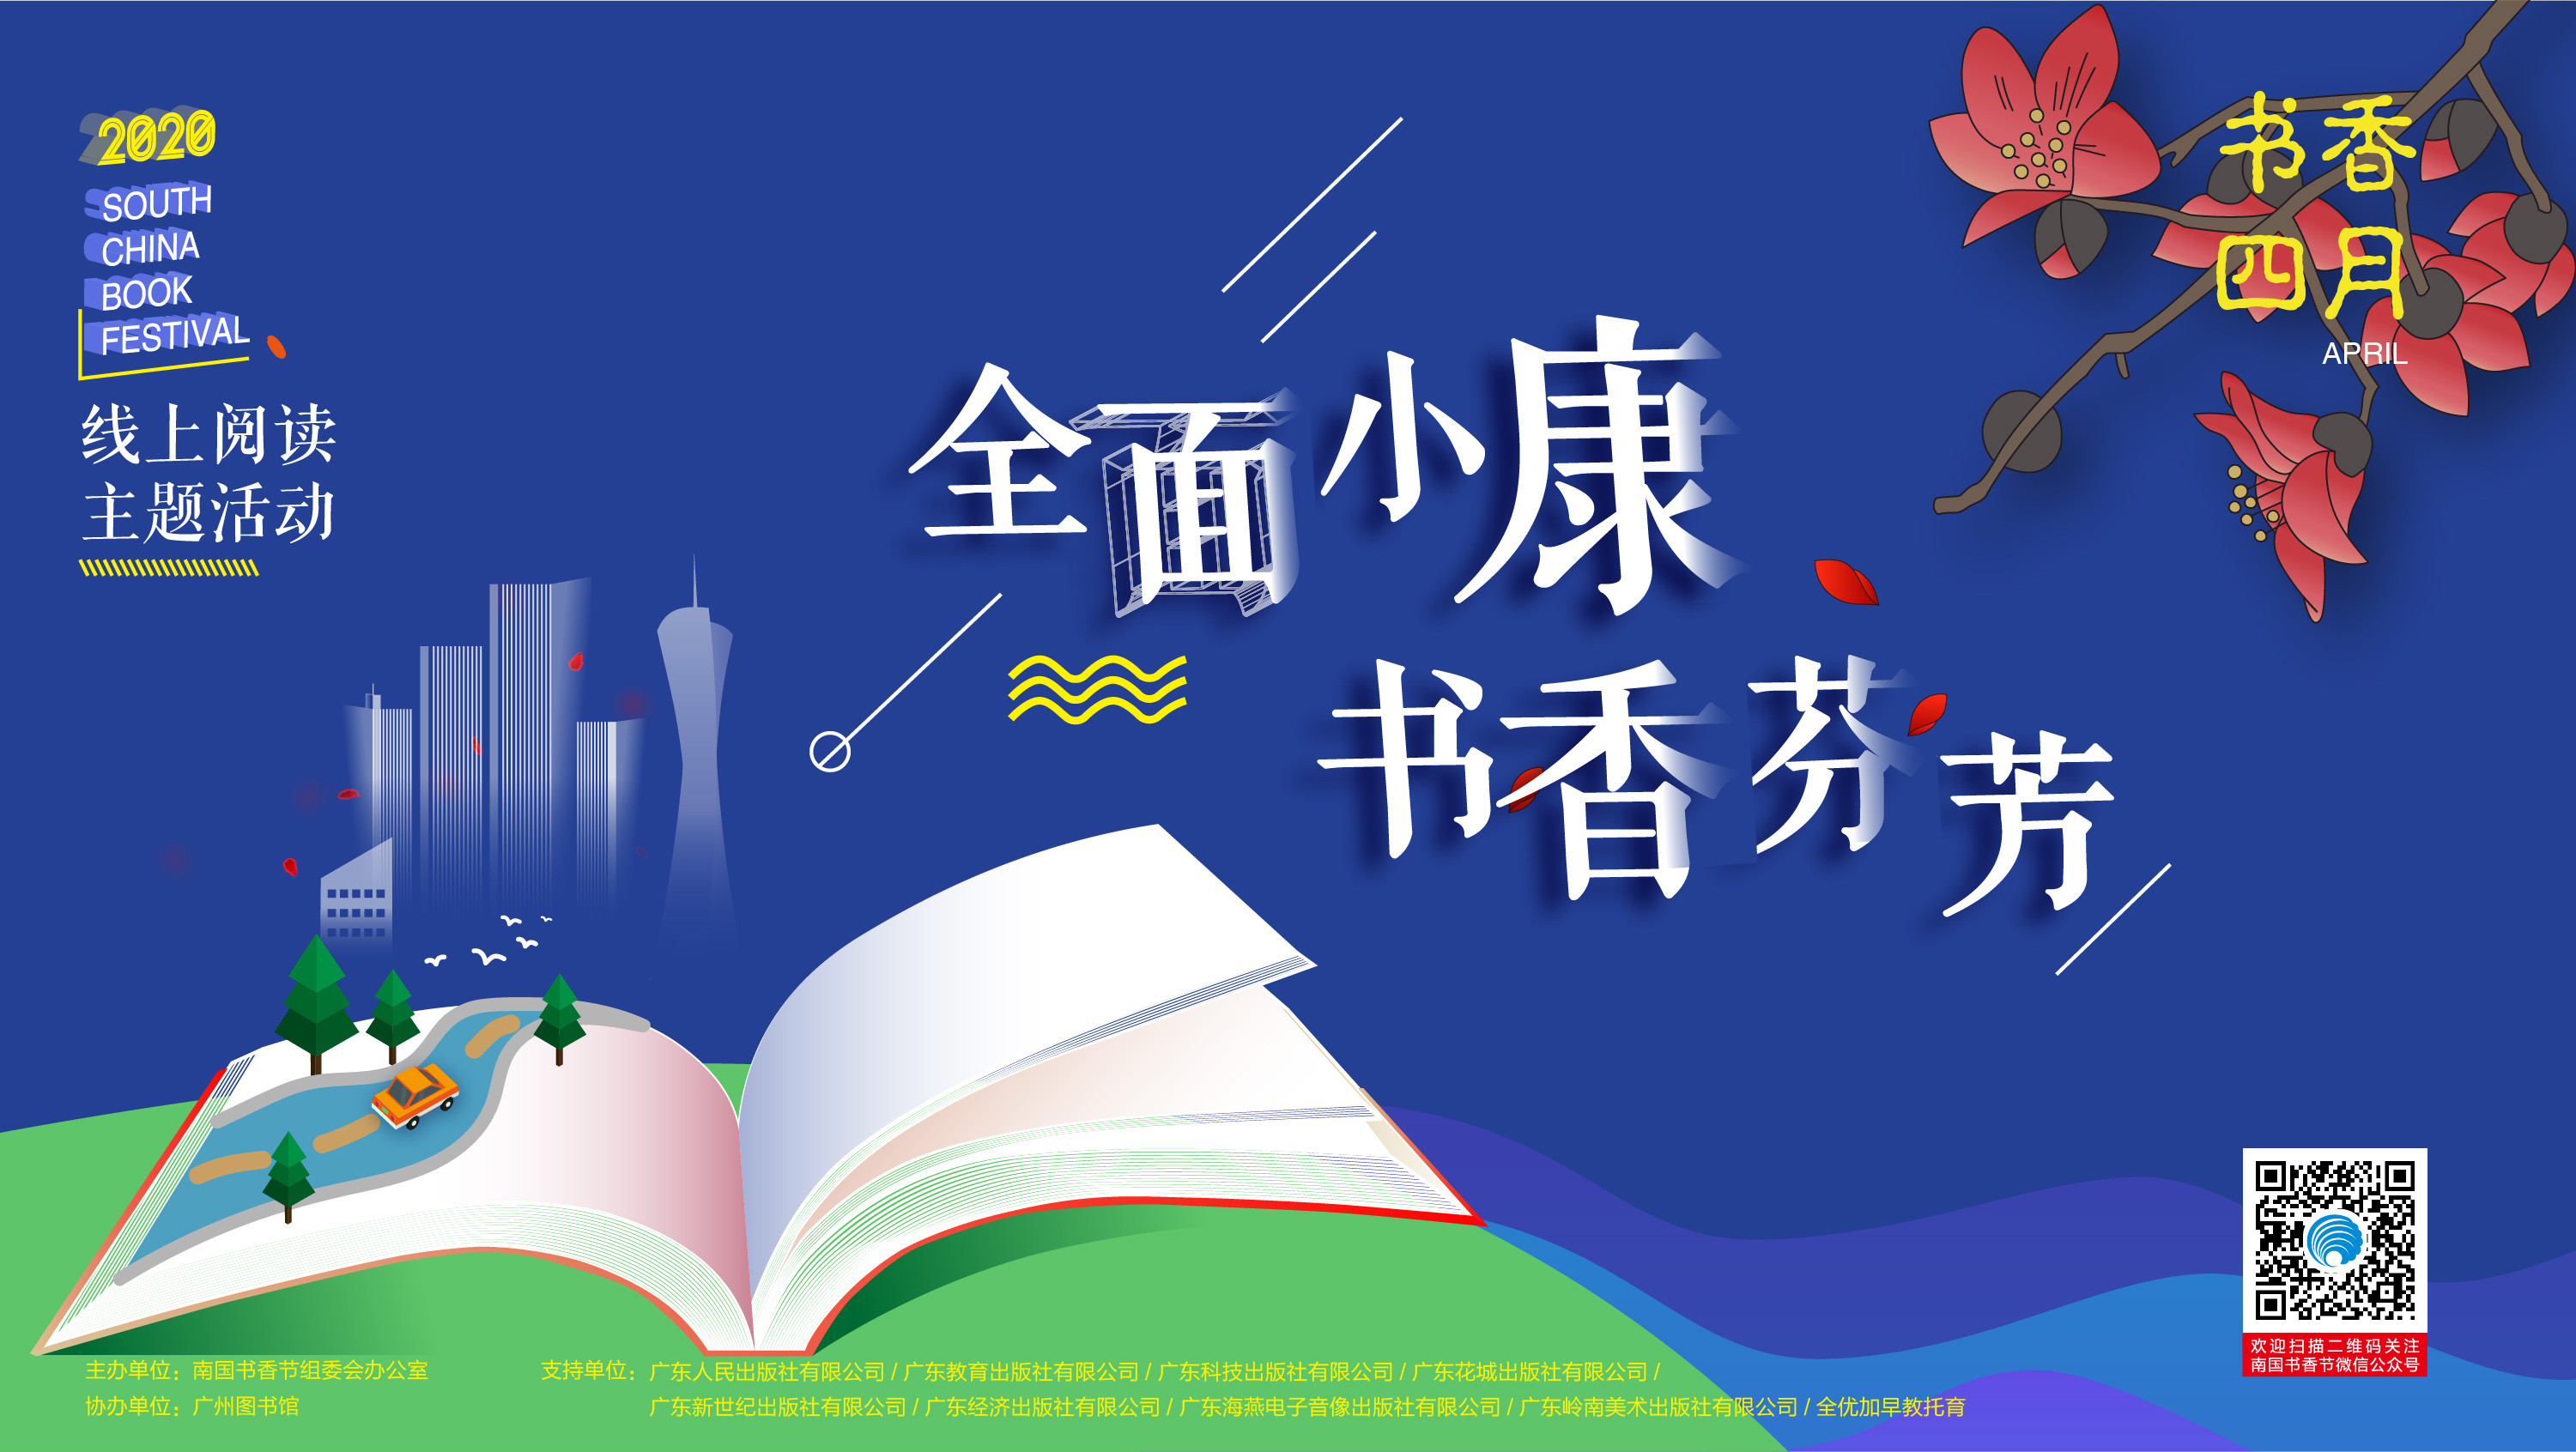 全面小康  书香芬芳——2020南国书香节线上阅读主题活动正式启动！